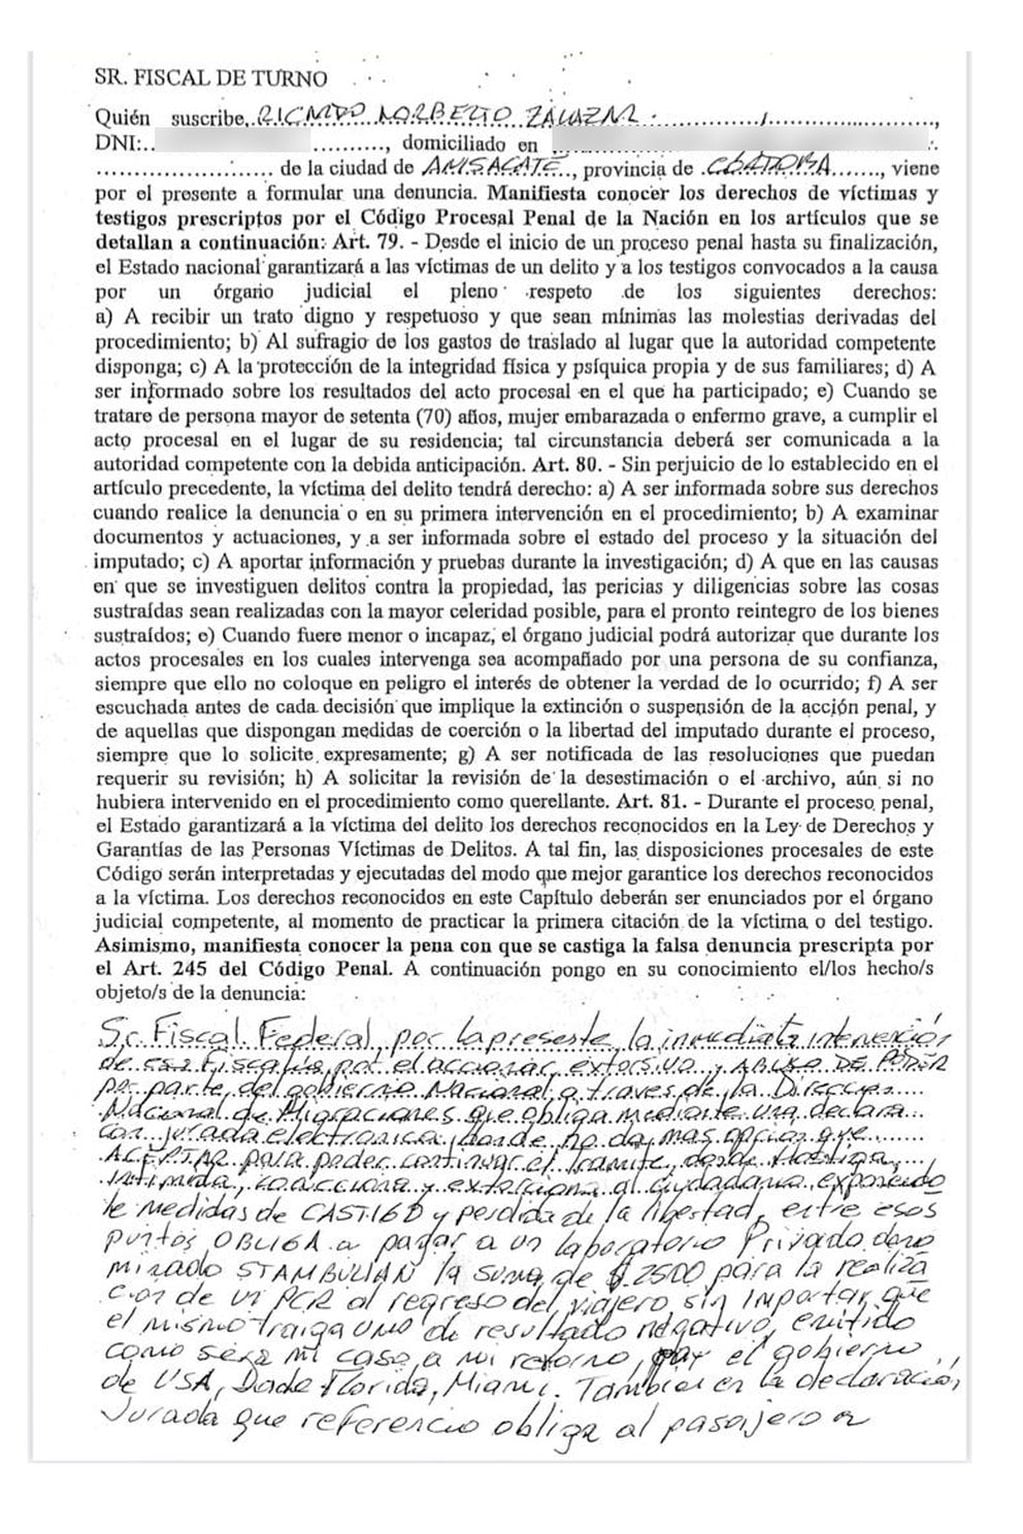 La denuncia penal que presentó Ricardo previo a salir del país donde manifiesta el accionar extorsivo en la Declaración Jurada.